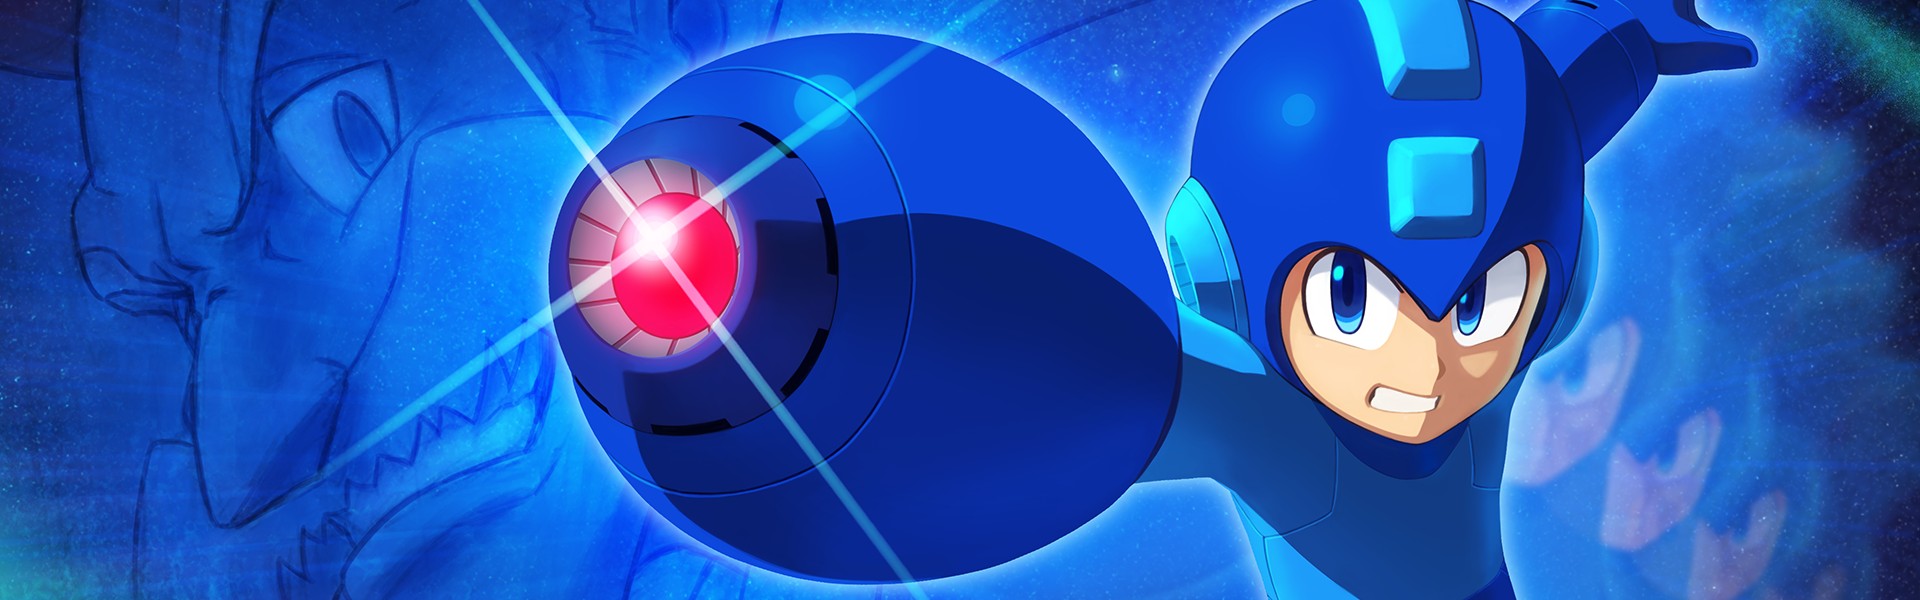 MEGA MAN ™ 11 arrive sur Playstation® 4, Xbox One, Nintendo switch et PC !